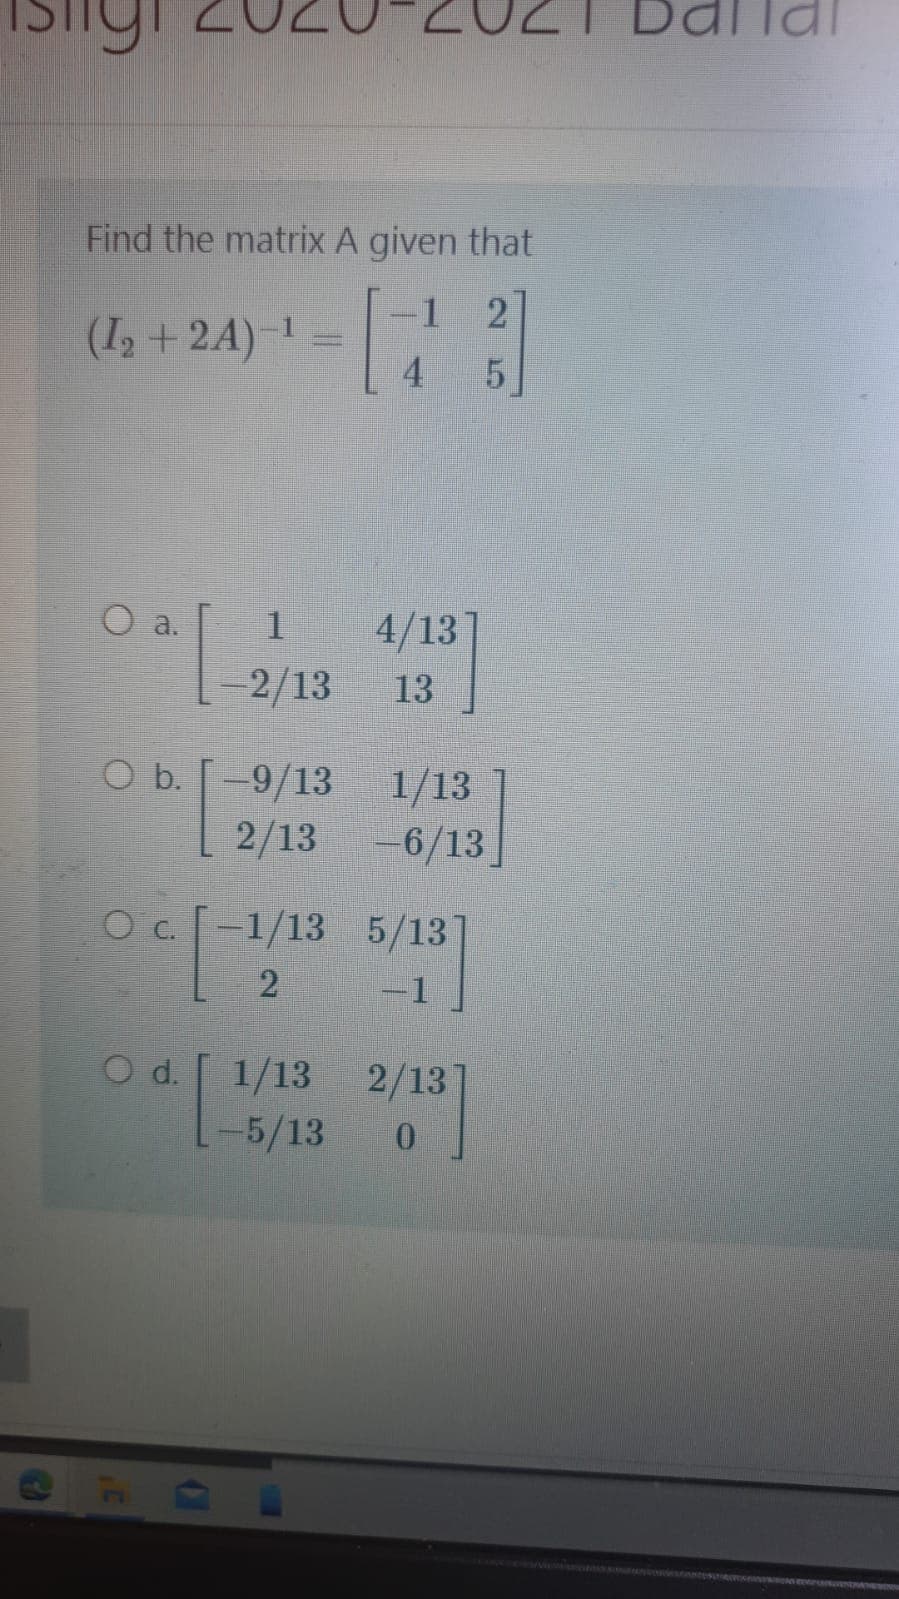 Dallai
Find the matrix A given that
1
(I, + 24) -
4
O a.
1
4/13
-2/13
13
O b. [
-9/13 1/13
2/13 -6/13]
Oc 1/13 5/13
-1
O d.
1/13
2/13
-5/13
0.
